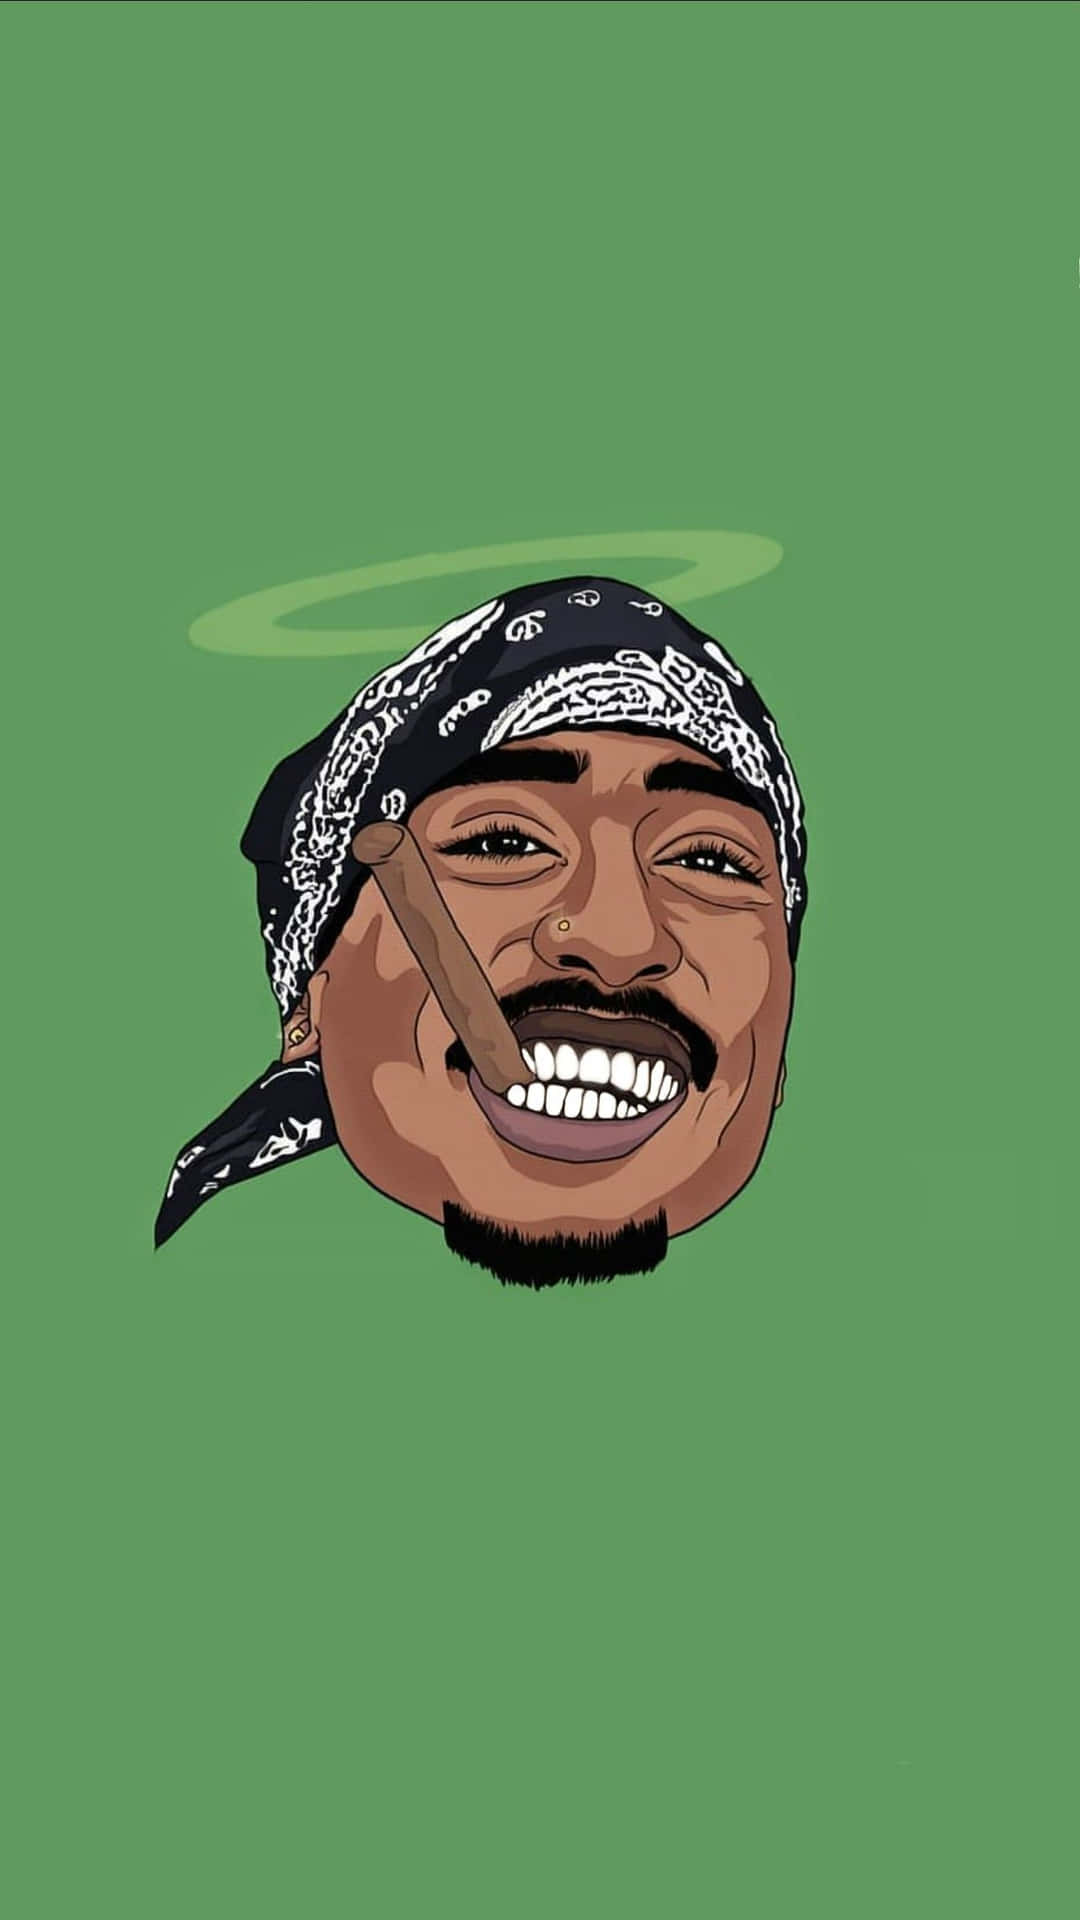 Einecartoon-illustration Des Ikonischen Rappers Tupac Shakur. Wallpaper